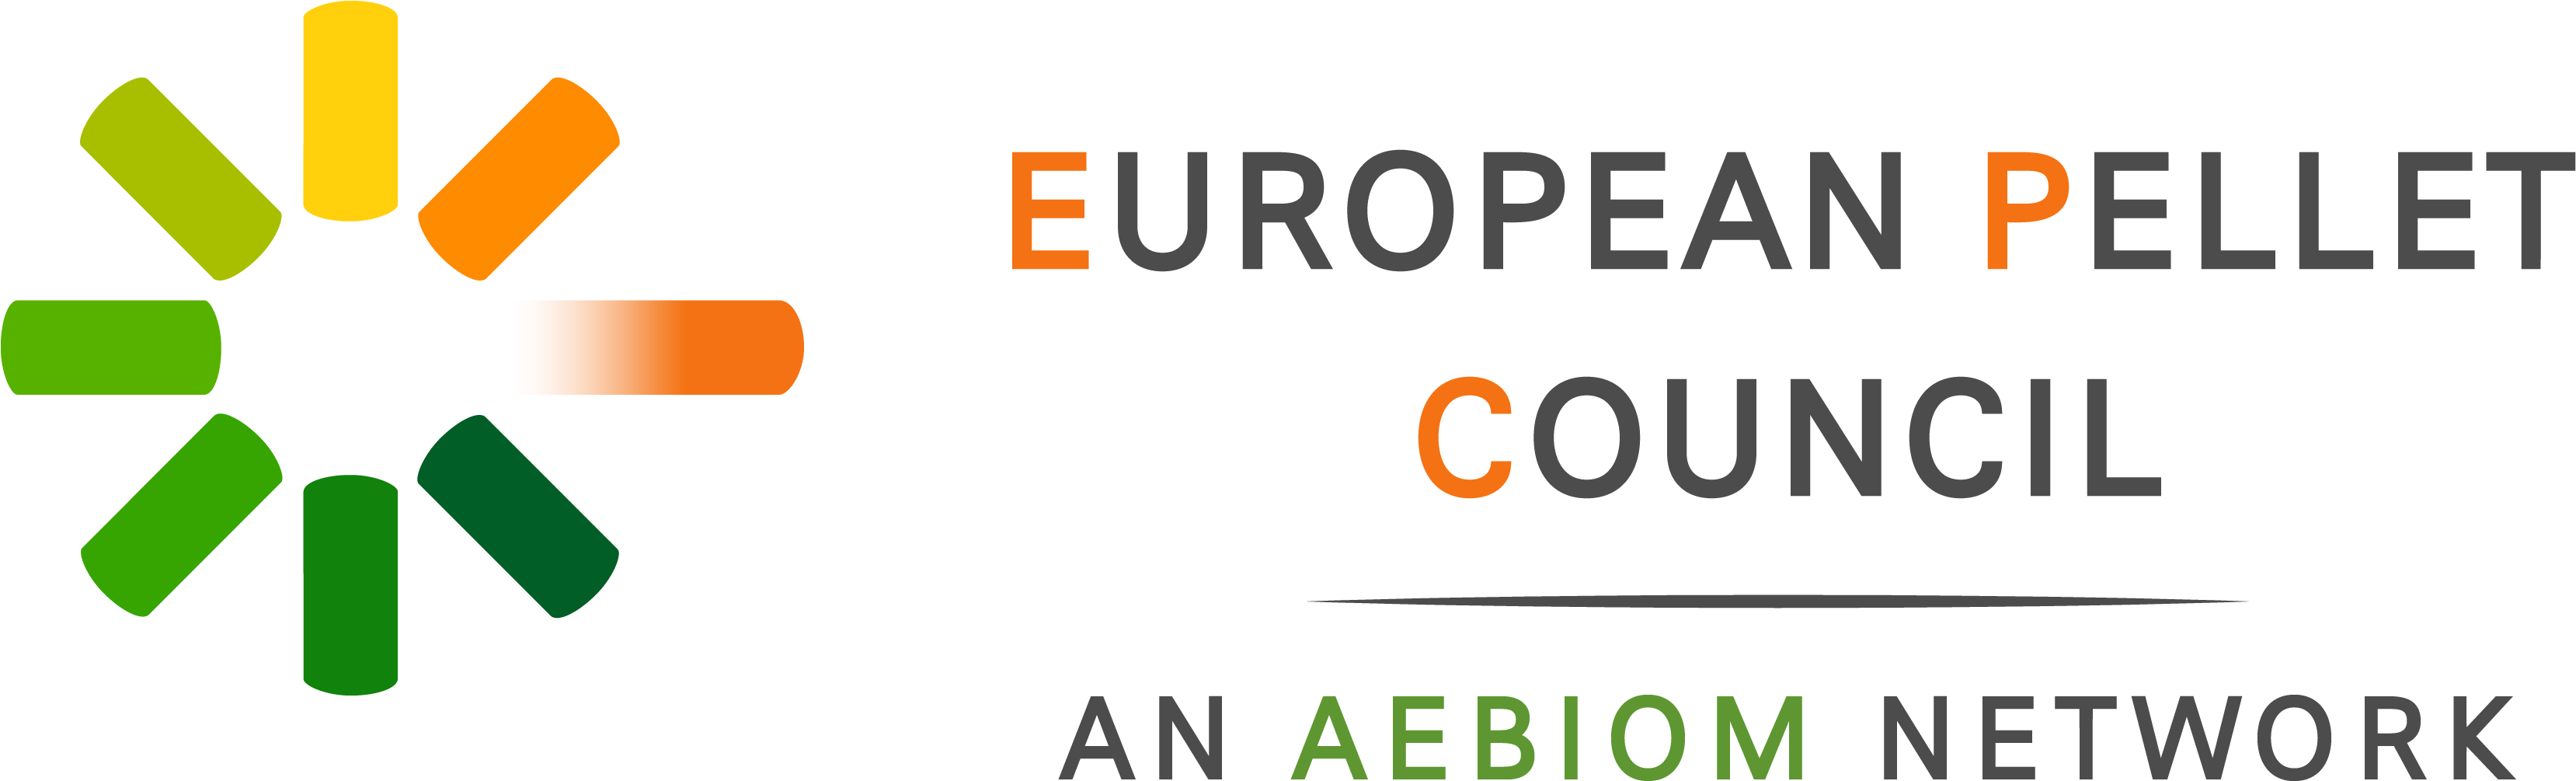 Final Png Large - European Pellet Council Logo Clipart (3332x1037), Png Download